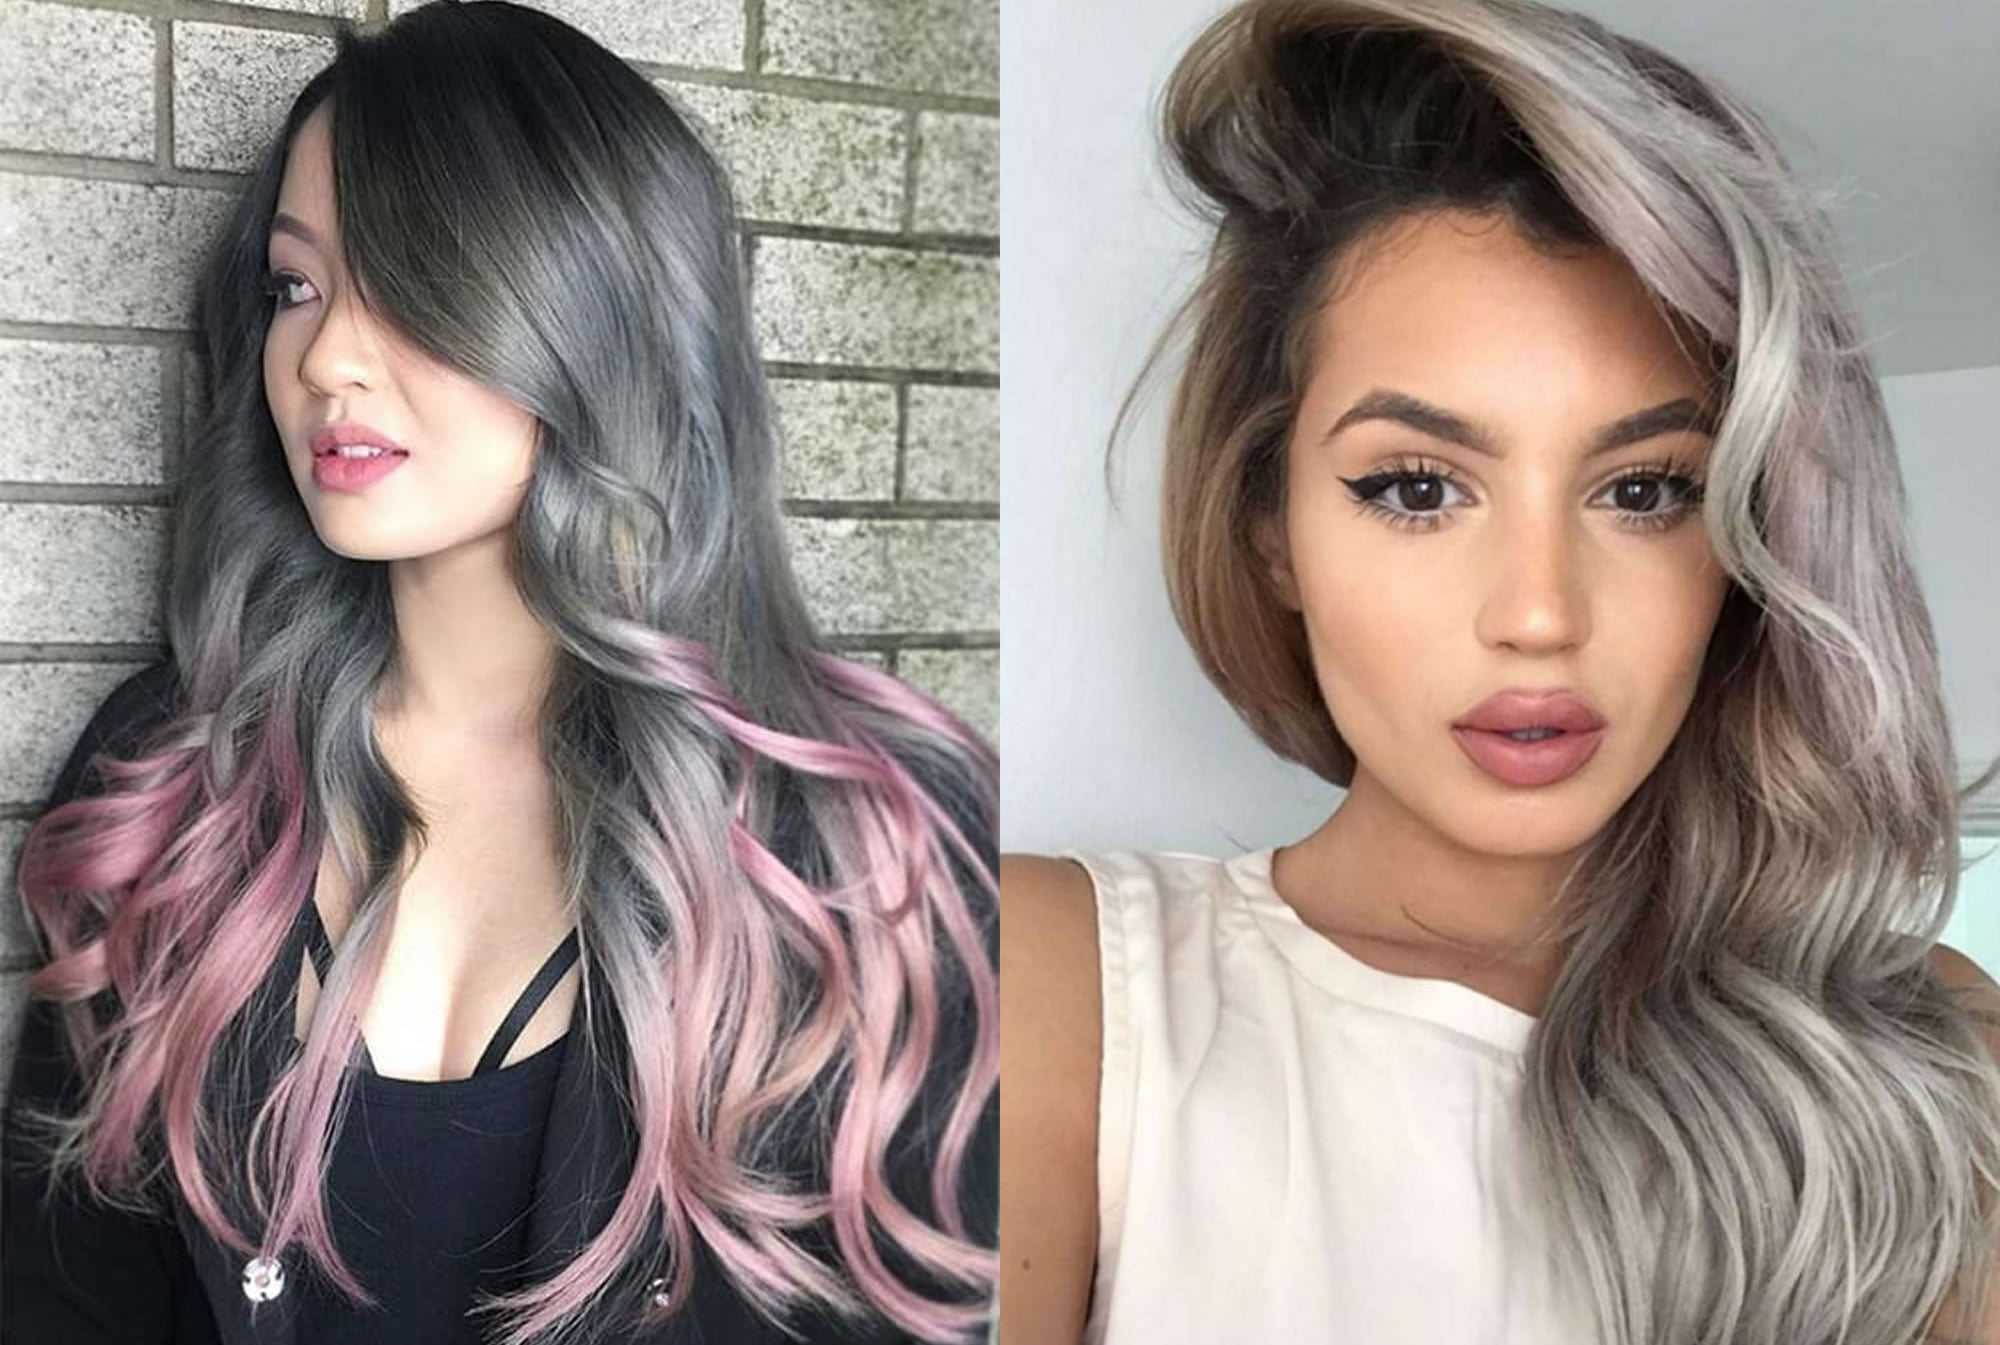 Техника 3d окрашивания волос: фото до и после объемного окрашивания